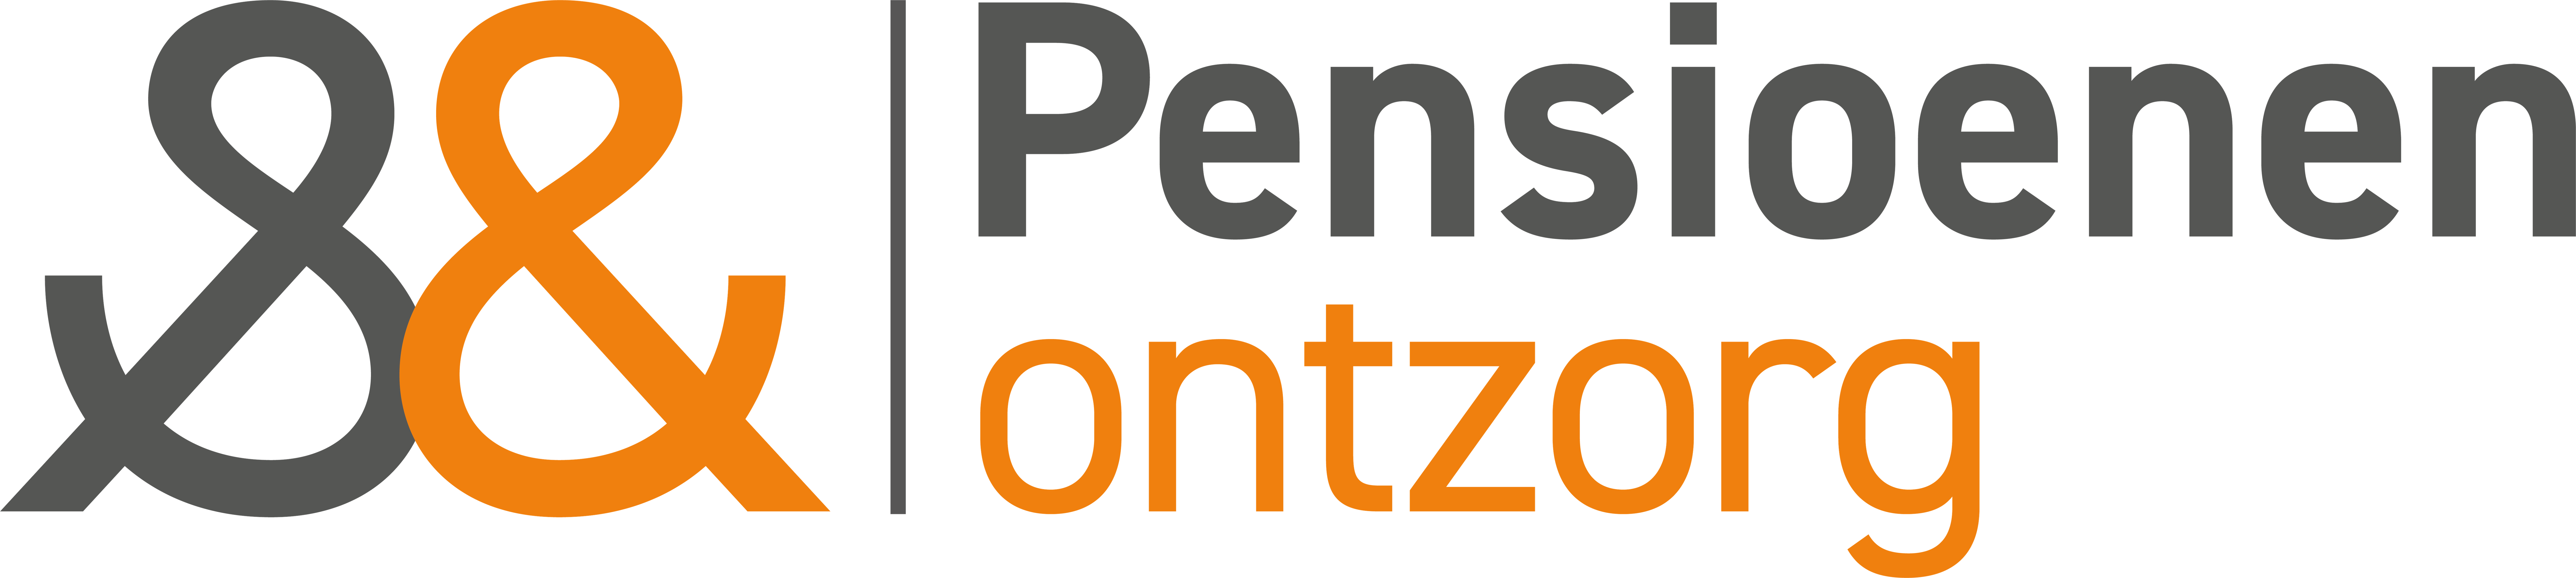 Logo Pensioenenontzorg.nl